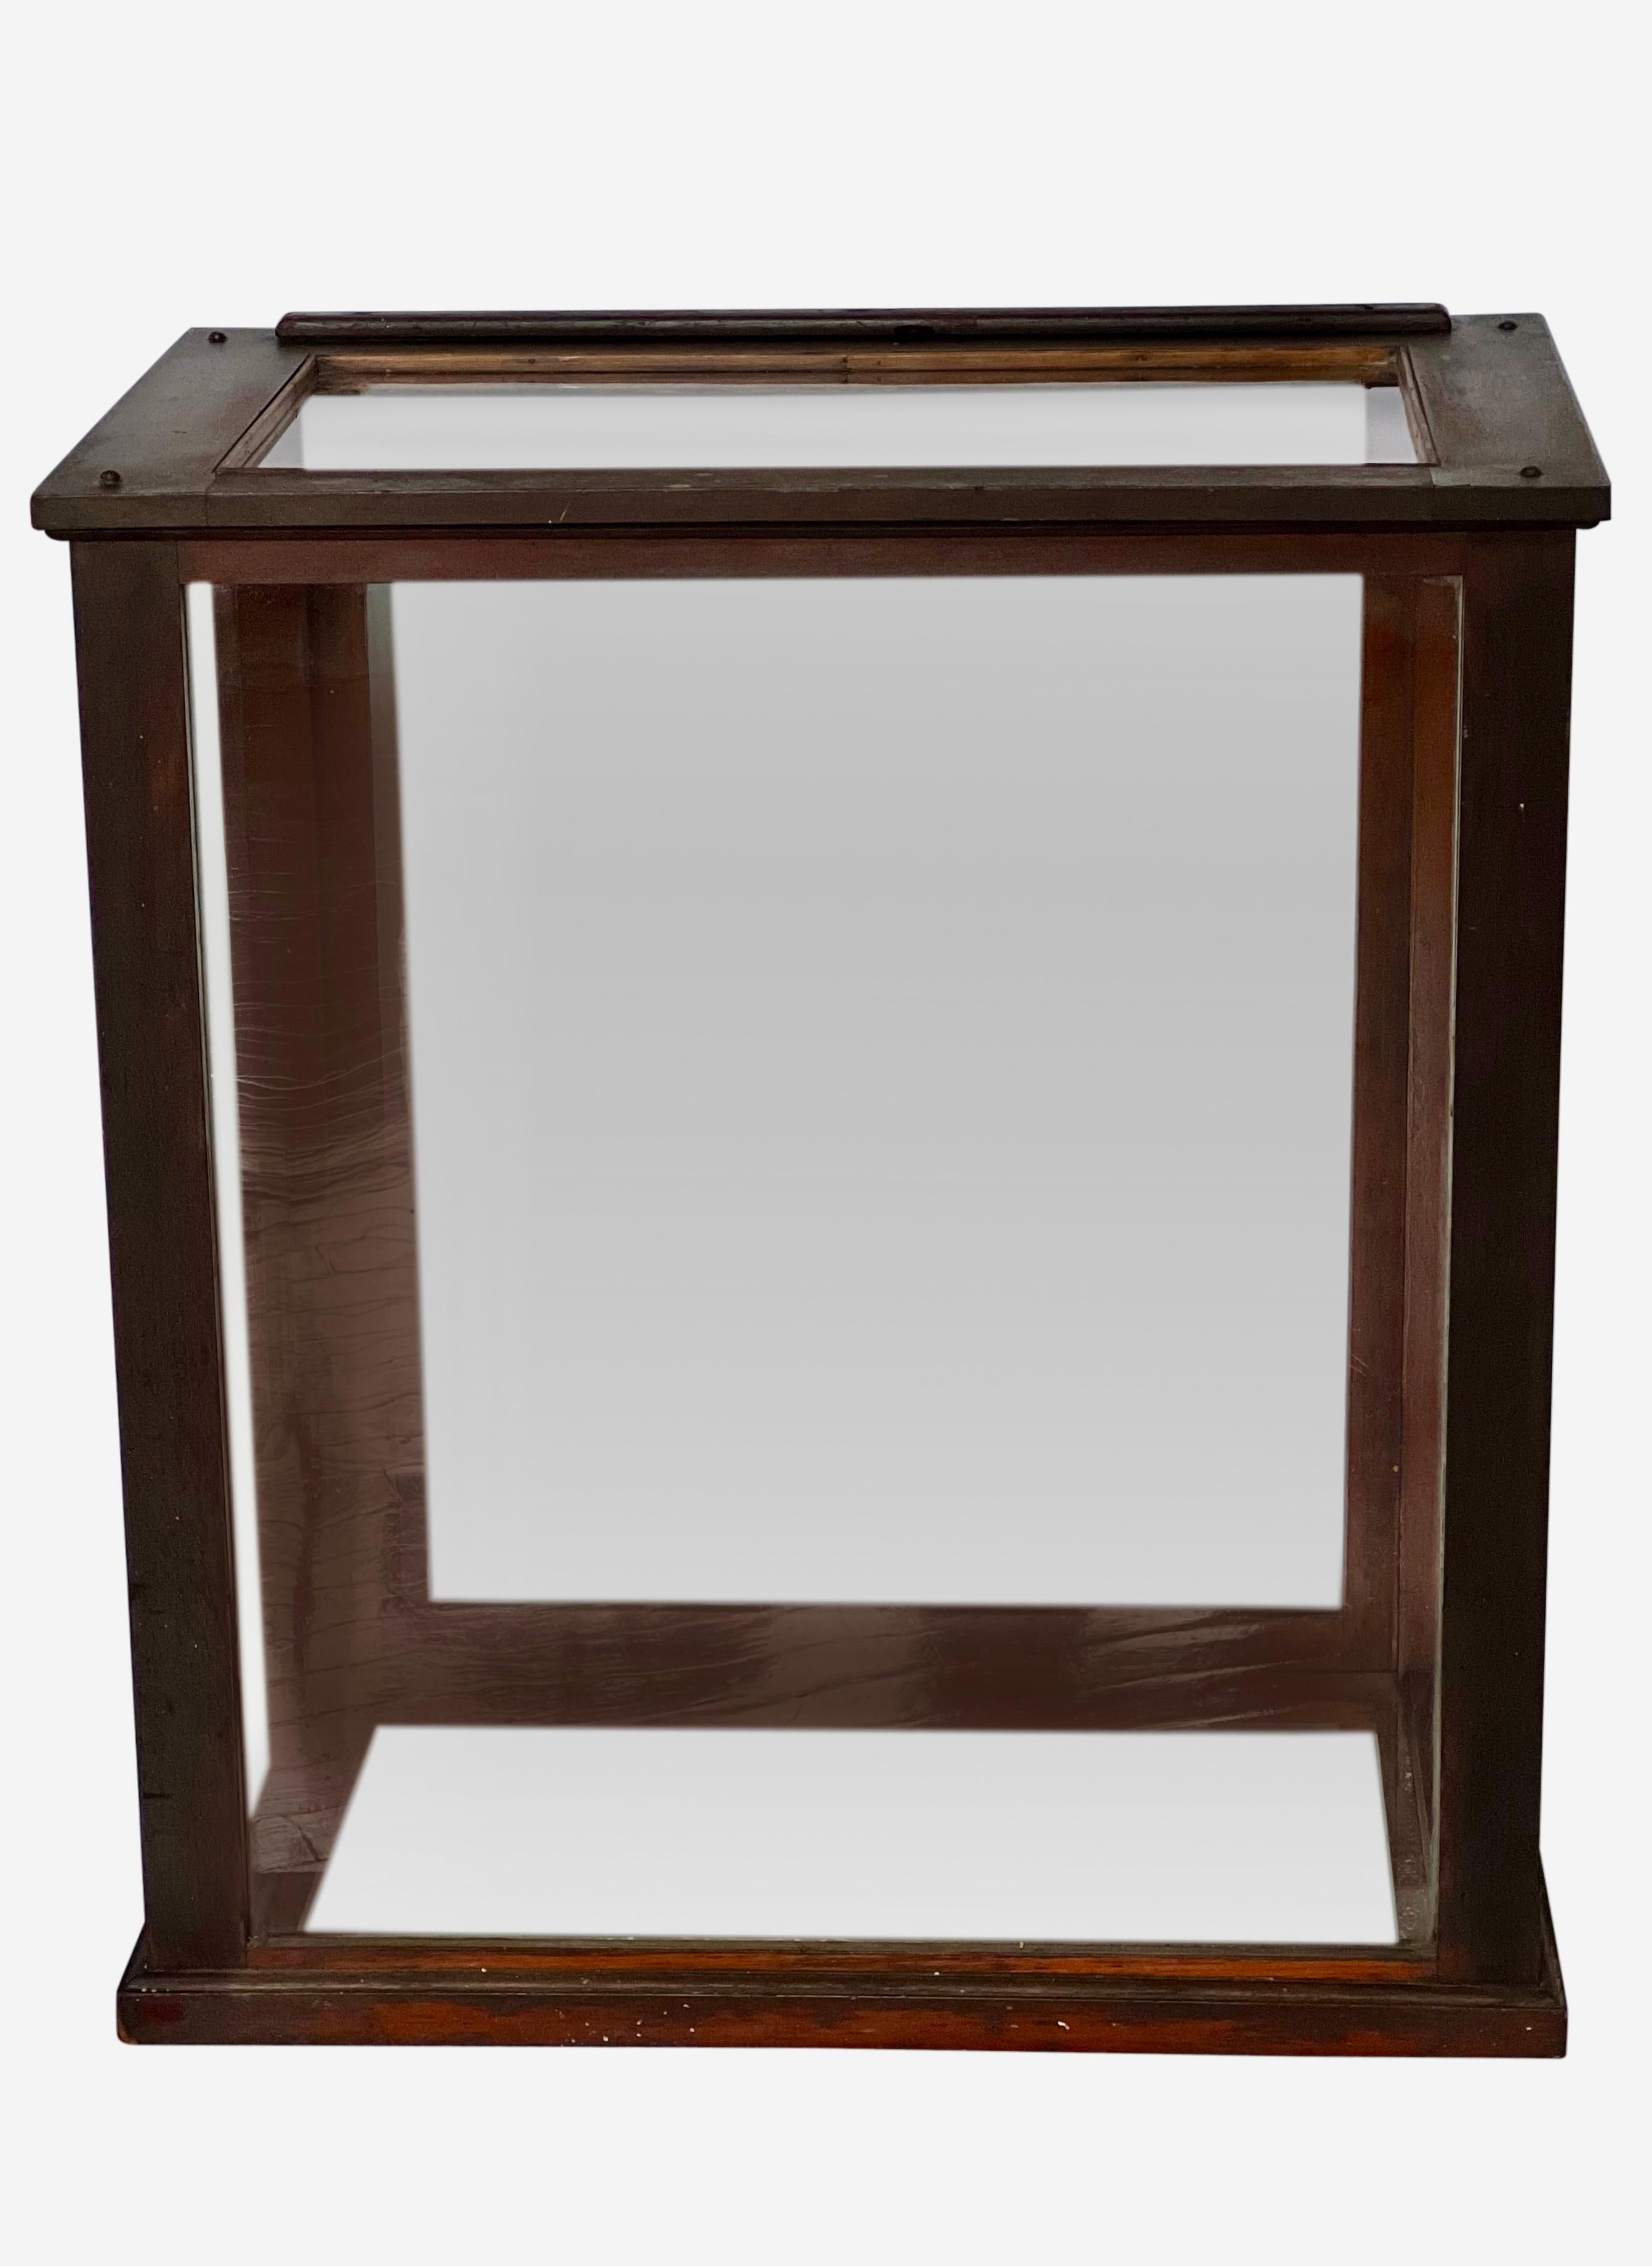 Vitrine de table ancienne en acajou, Angleterre, vers 1900.

Cette magnifique vitrine à six côtés est dotée d'un panneau coulissant vertical à l'arrière. Le verre d'origine et le cadre en bois d'acajou sont en bon état. Le design simple avec le